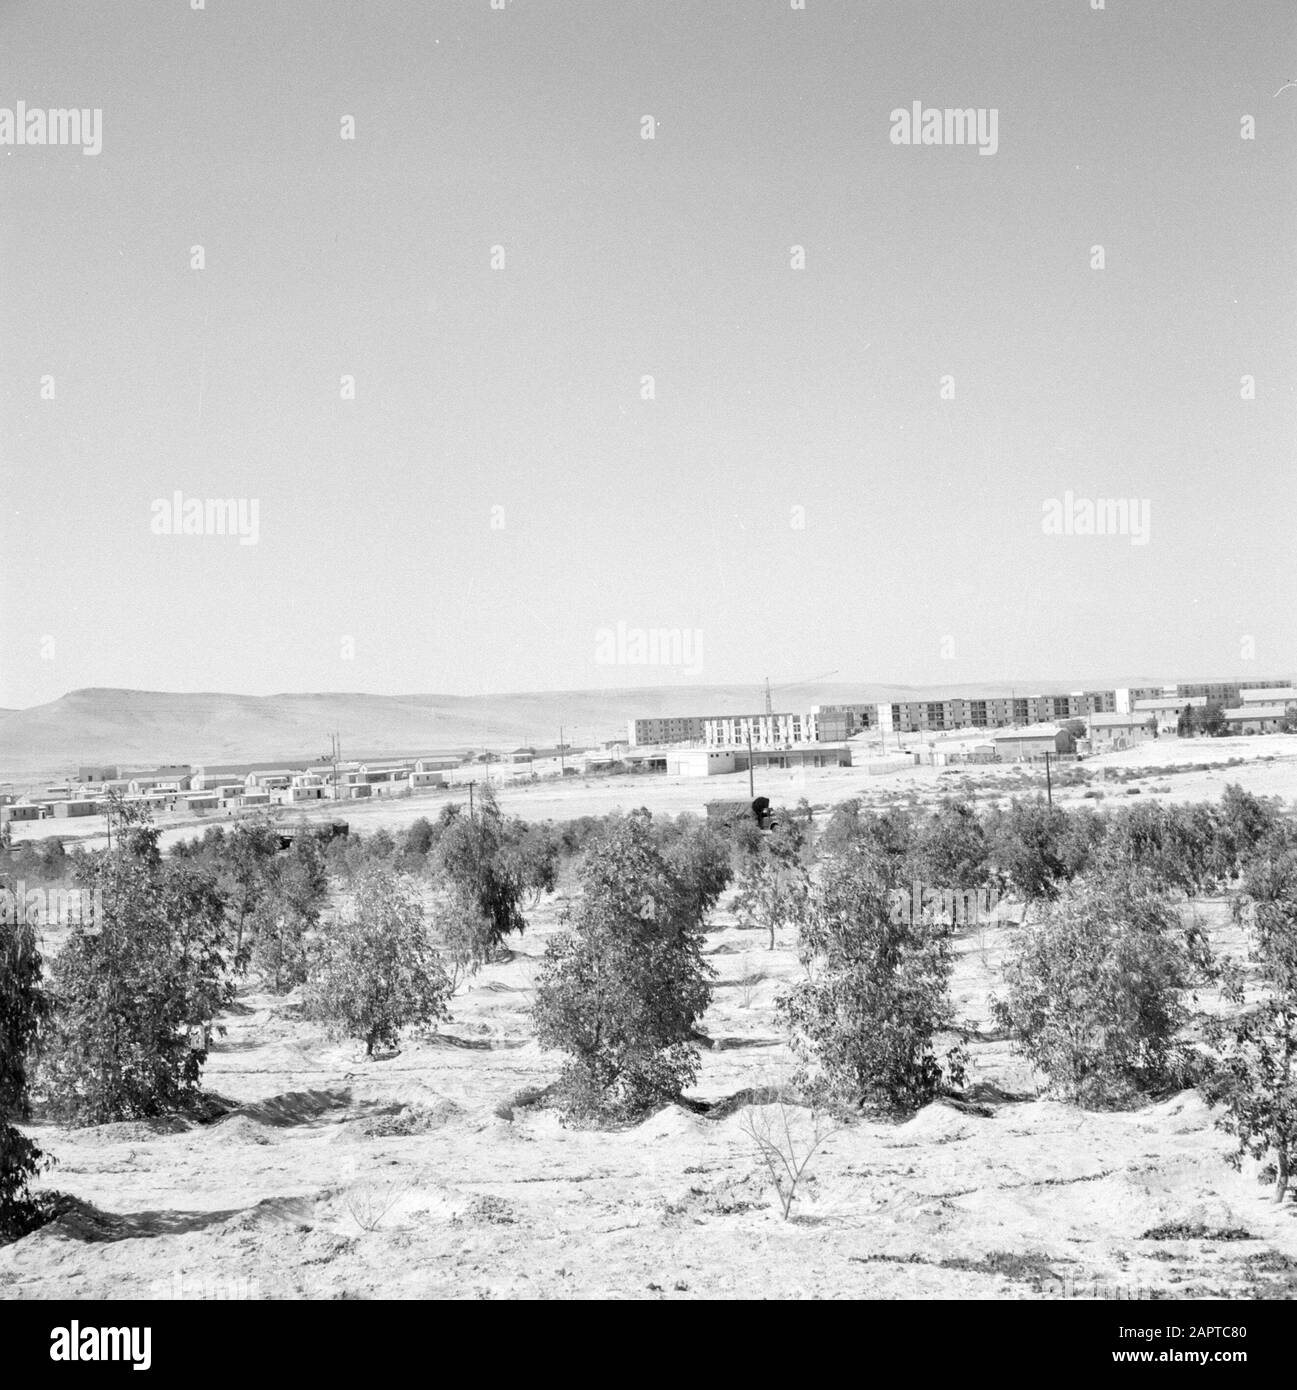 Israël - Dimona vue de la ville de Dimona avec plantation d'arbres au premier plan Date: 1 janvier 1963 lieu: Dimona, Israël, Negev mots clés: Arbres, nouvelle construction, urbanisme, logement Banque D'Images